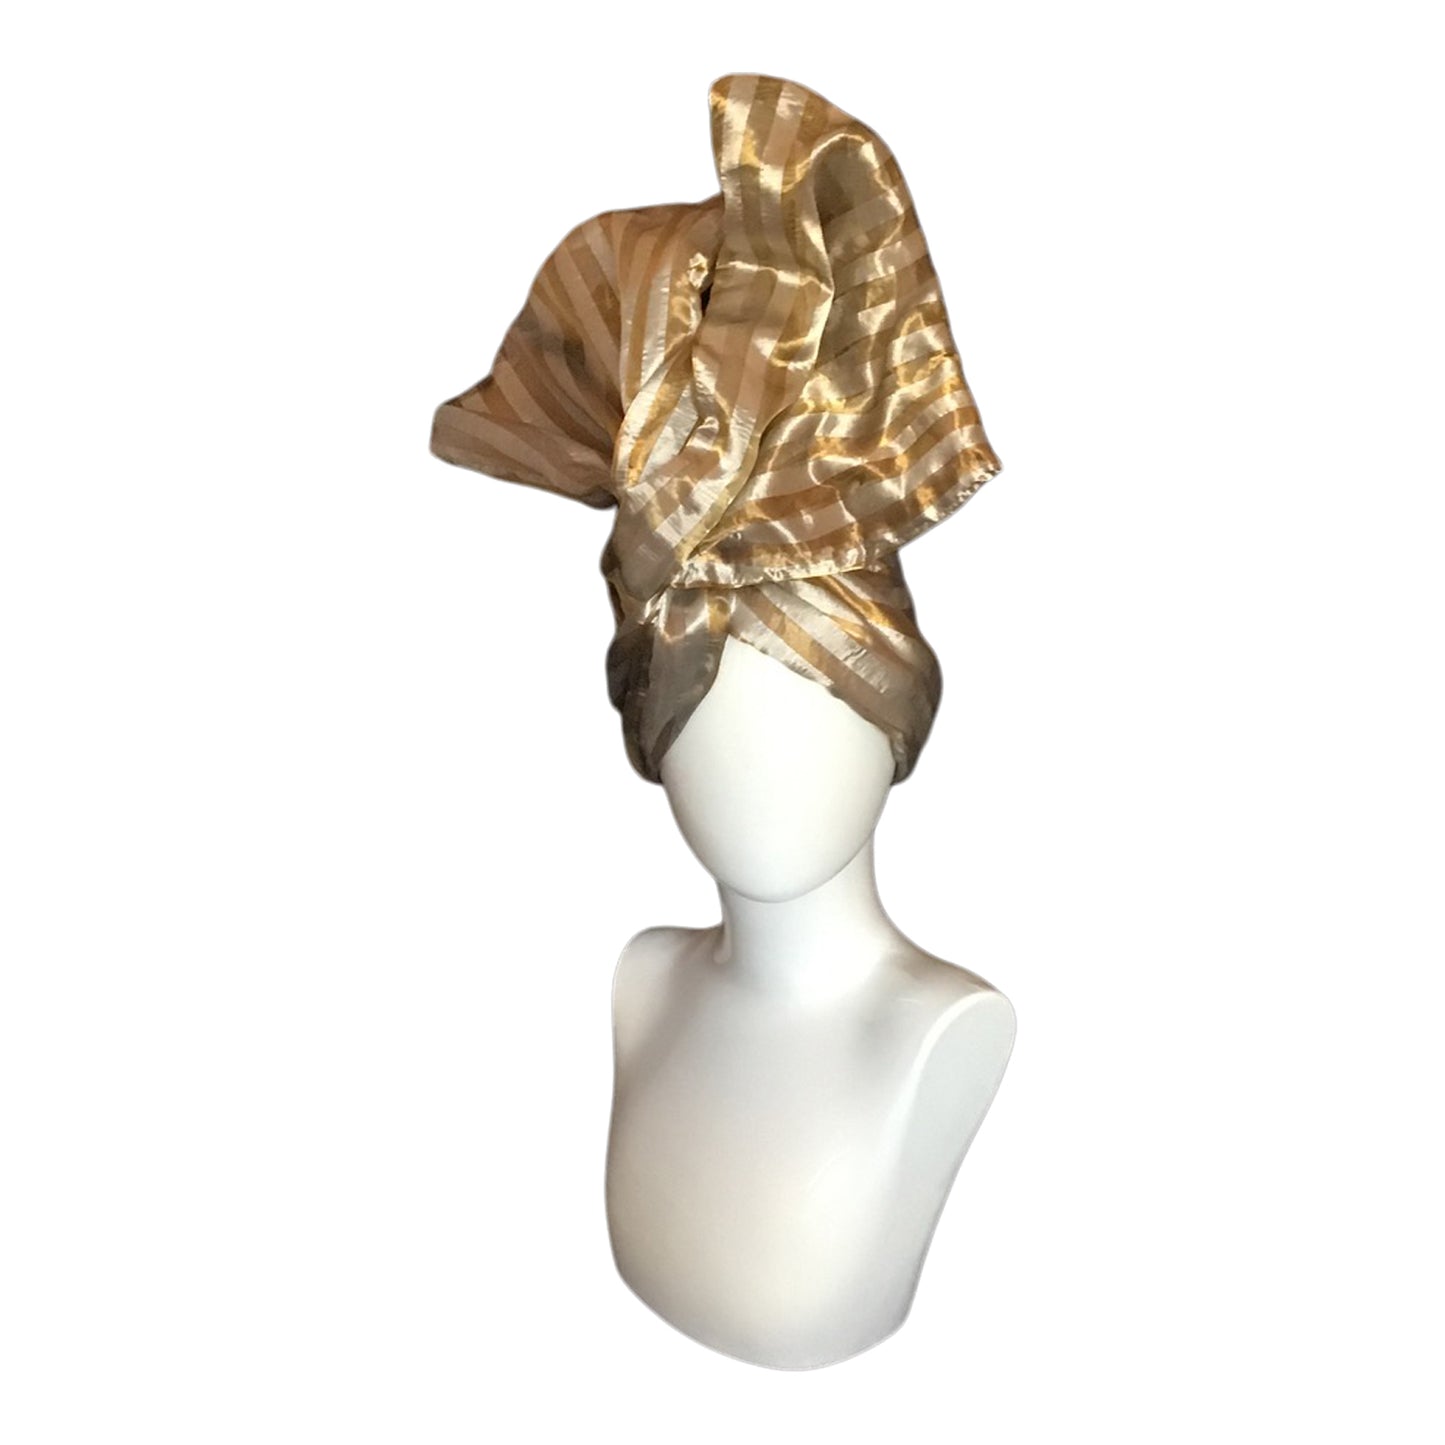 Twisturban® Turban in silk silver and gold  Lame stripe